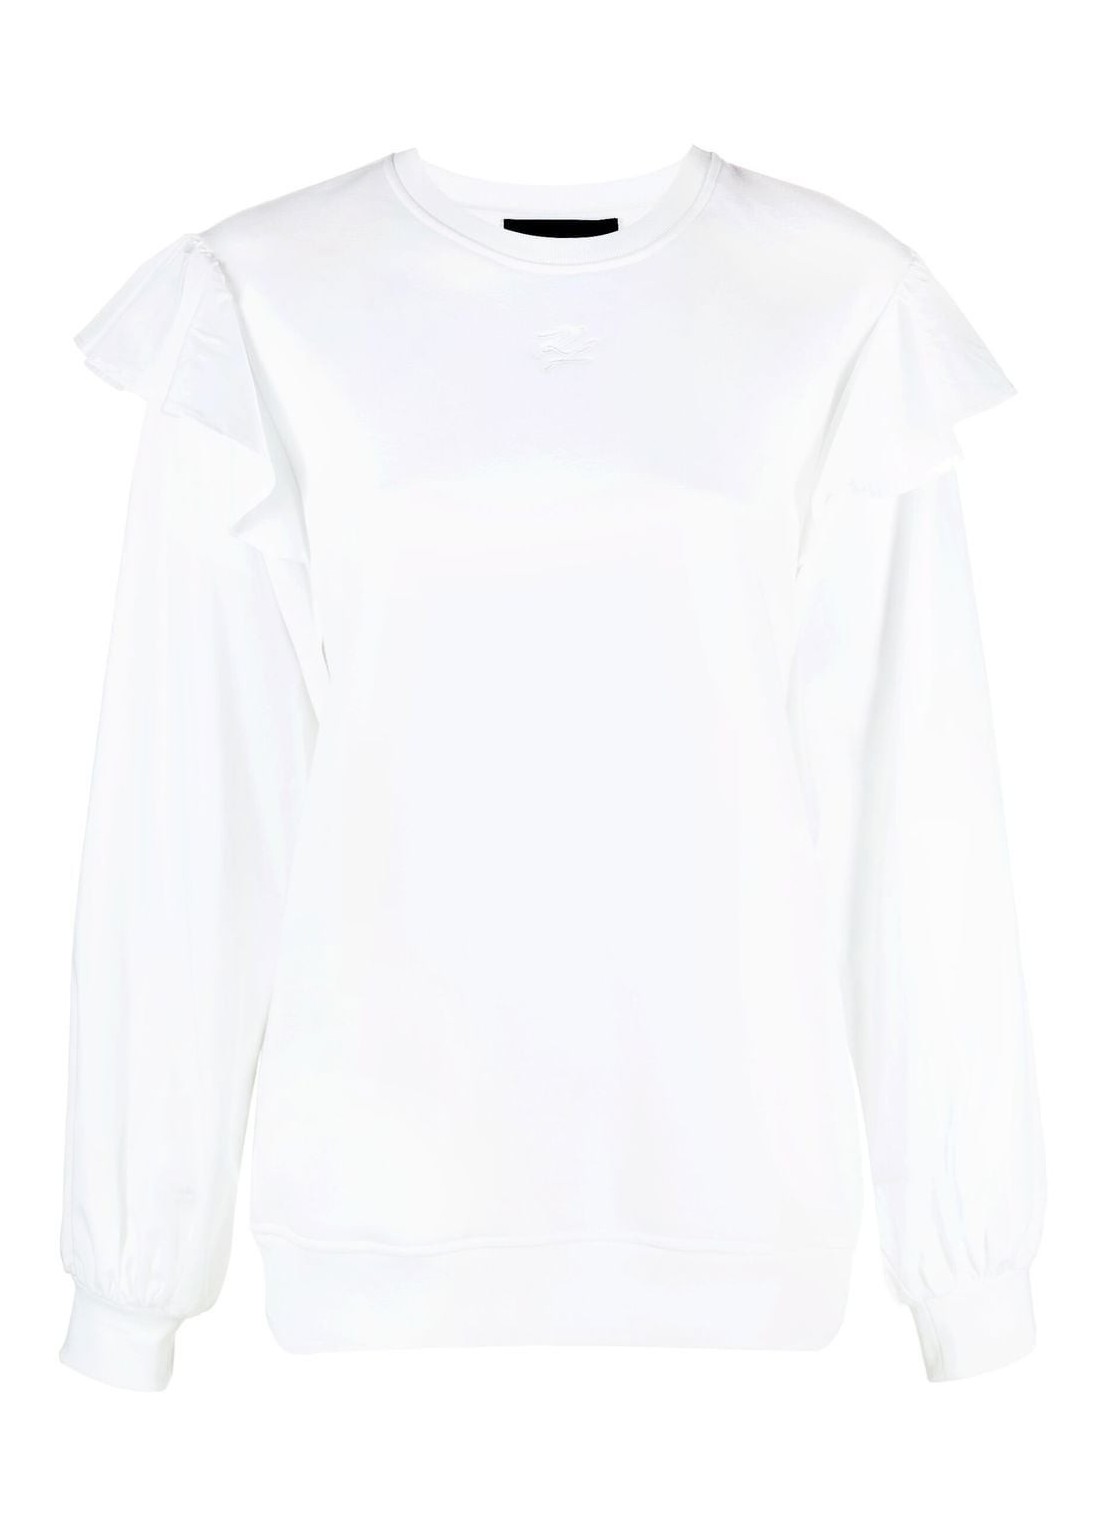 Camiseria karl lagerfeld shirt woman fabric mix sweatshirt 230w1813 100 talla L
 